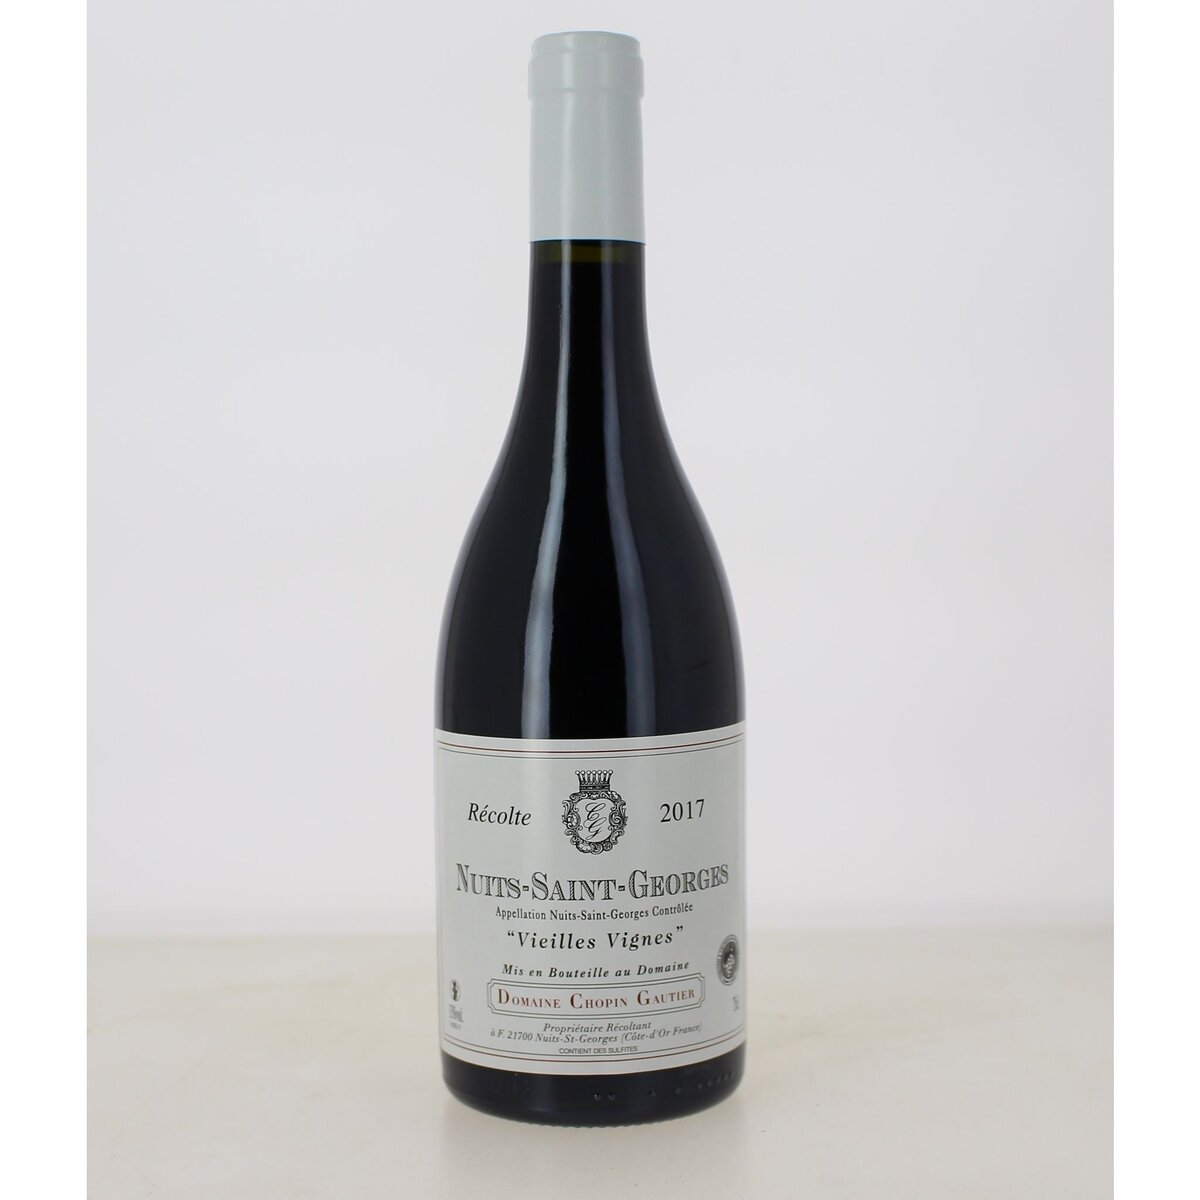 Vin rouge Nuits Saint Georges Gautier Chopin vieilles vignes 2016 75cl